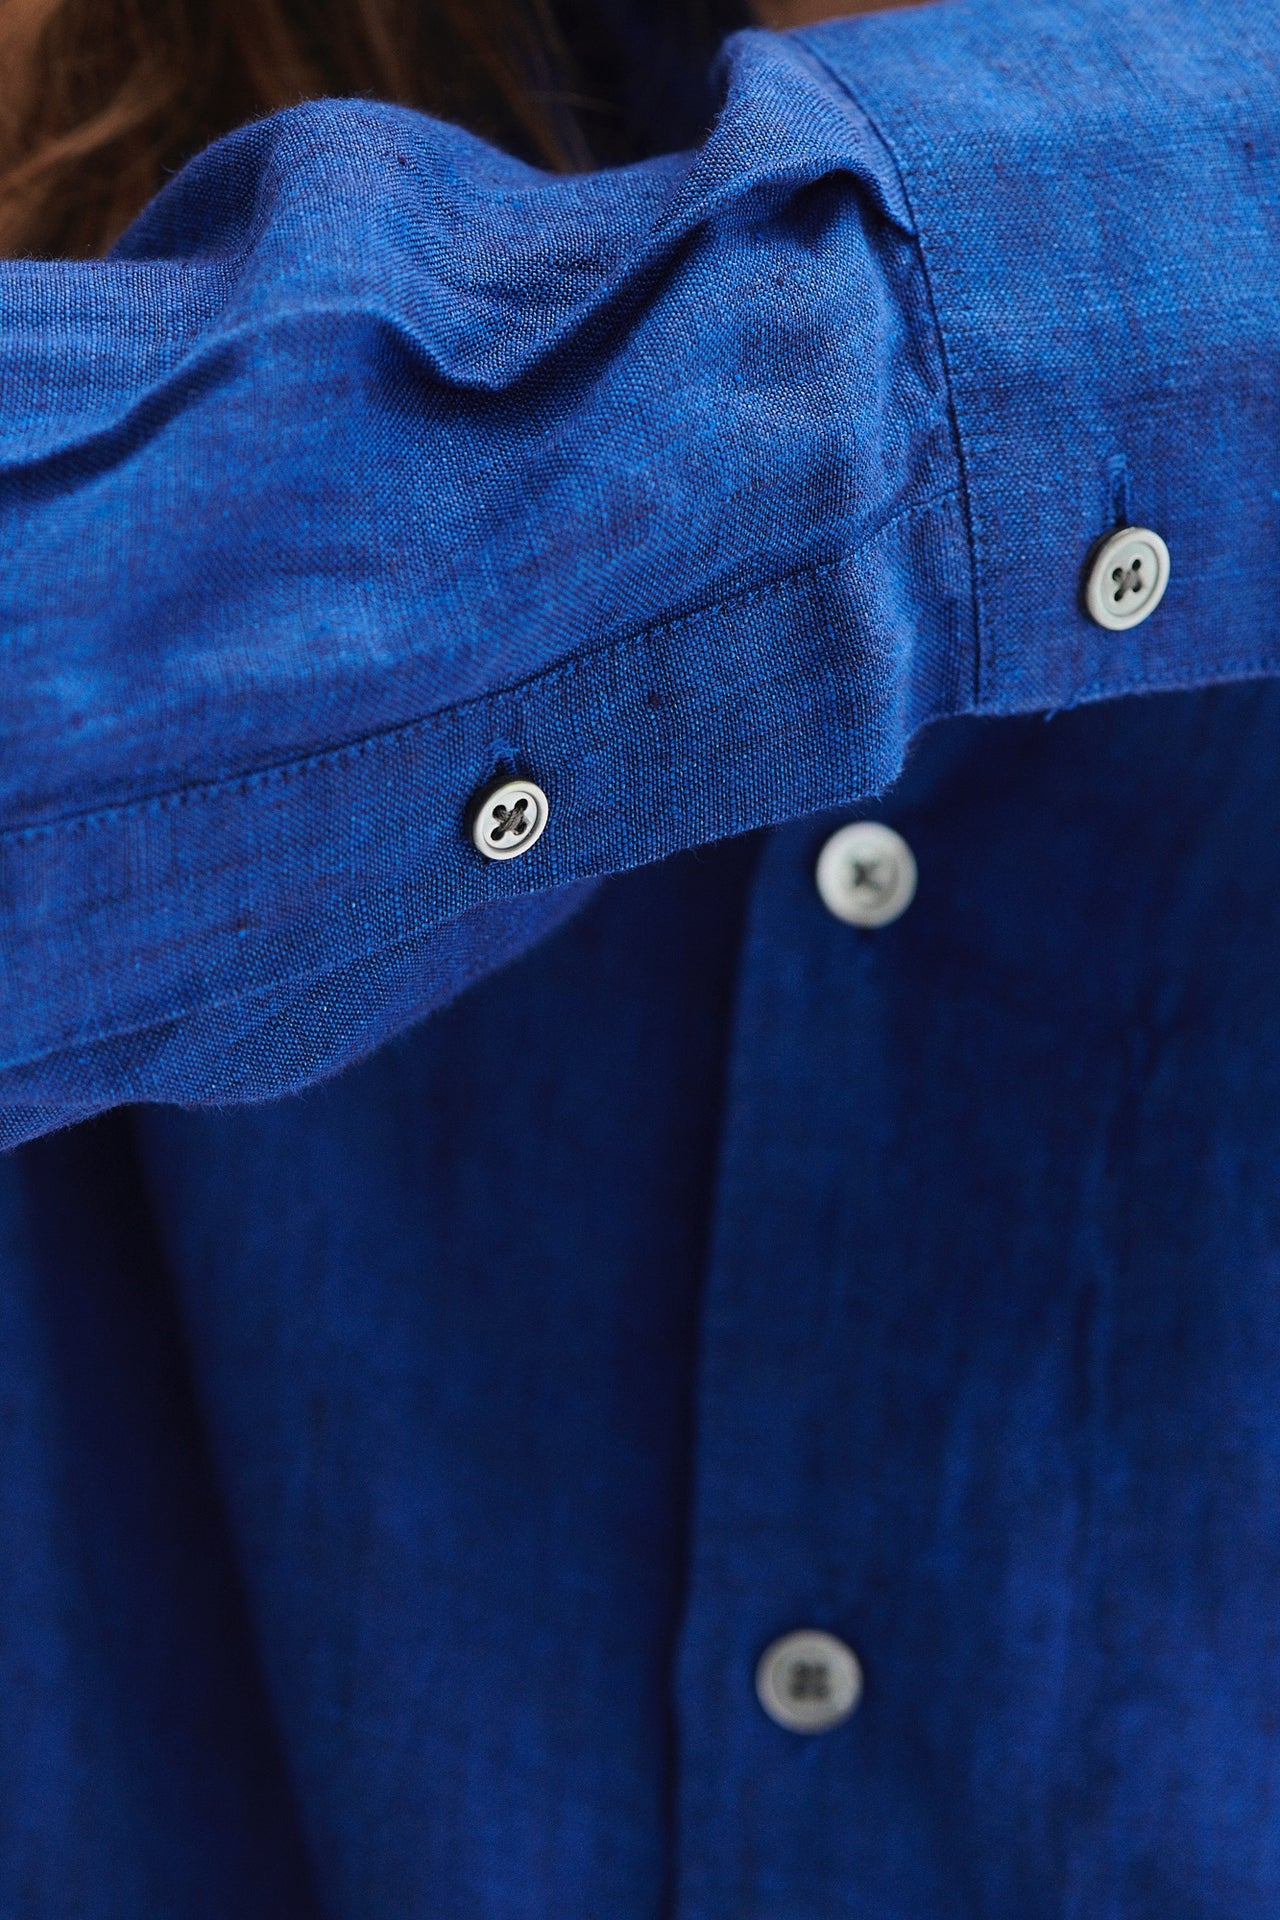 柔らかく風通しの良いコバルトブルーのボヘミアンリネンを使用したフィールグッドシャツ